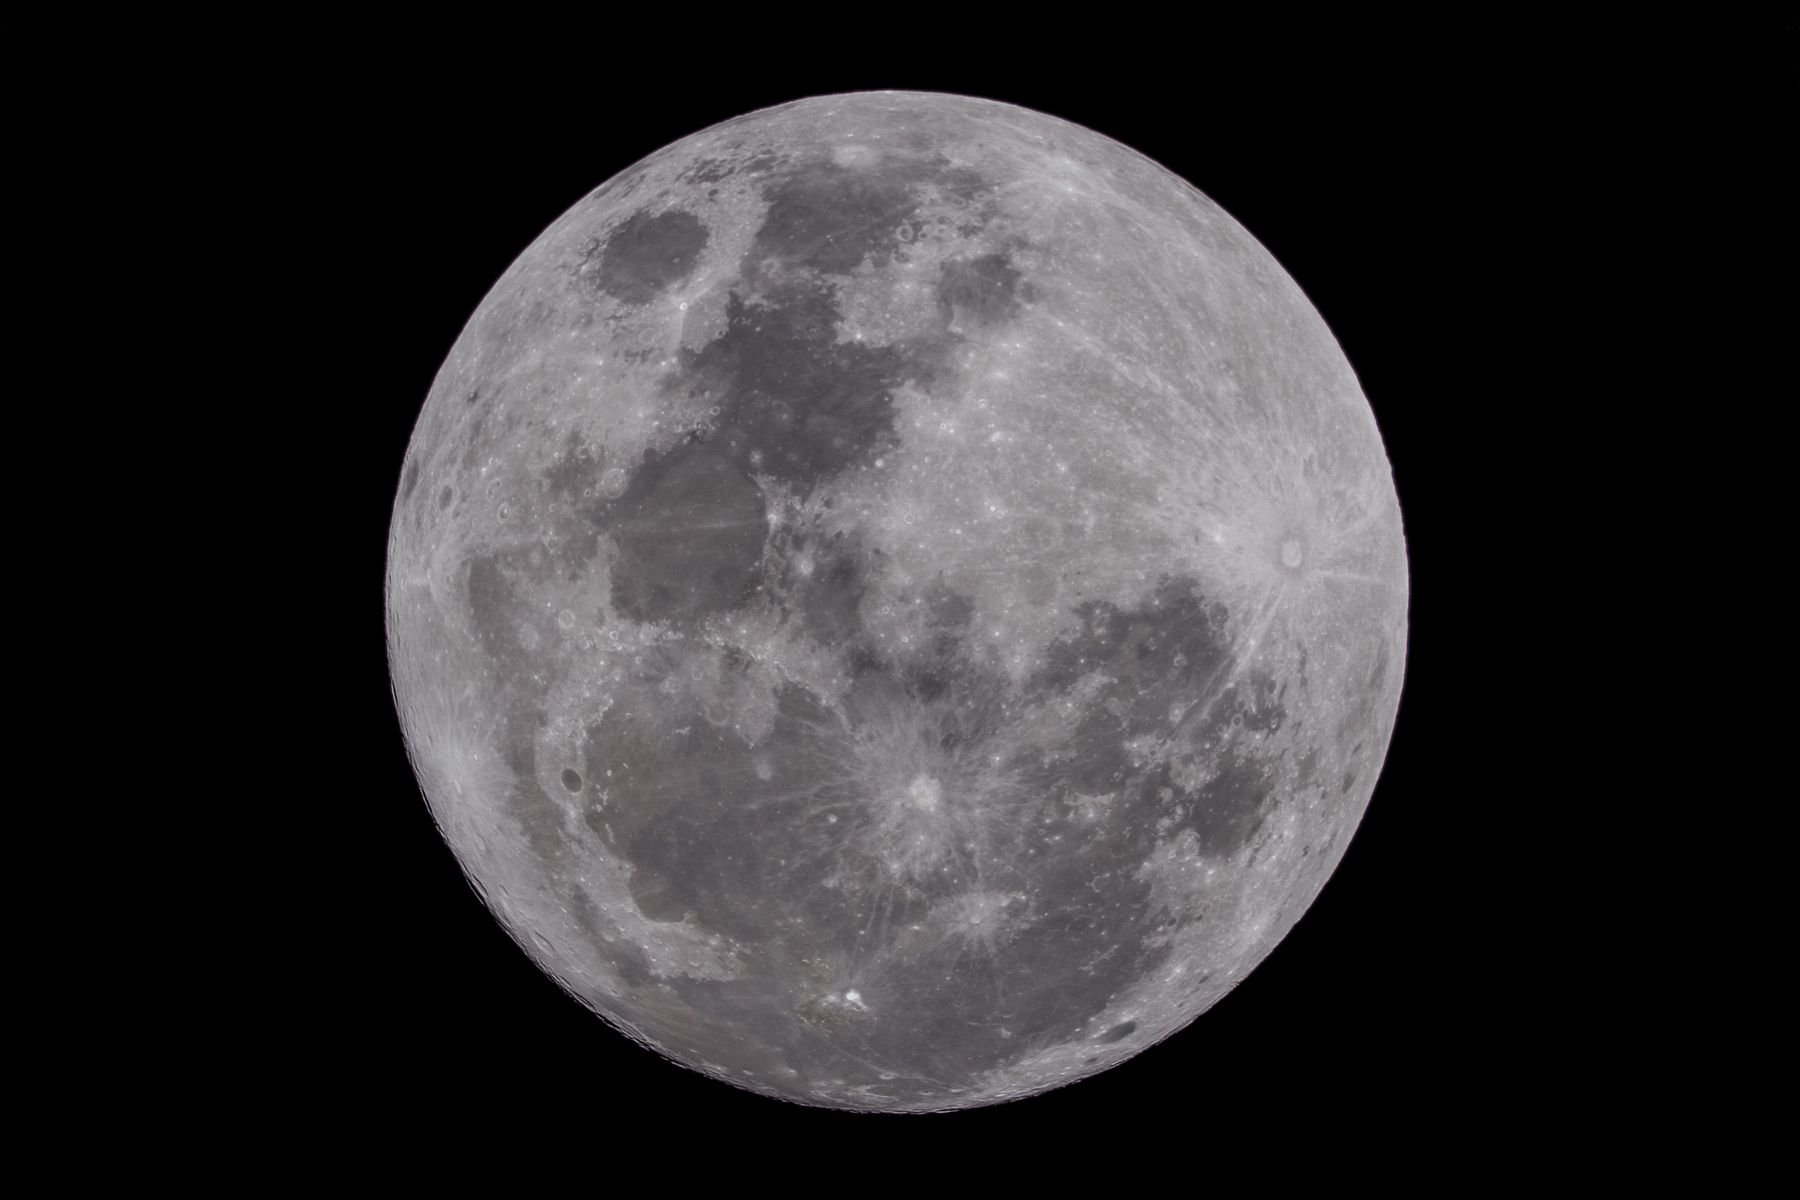 สถาบันวิจัยดาราศาสตร์แห่งชาติ (องค์การมหาชน) - เทคนิคถ่ายภาพดวงจันทร์วัน Super Full Moon อย่างไรให้ได้ภาพ HD